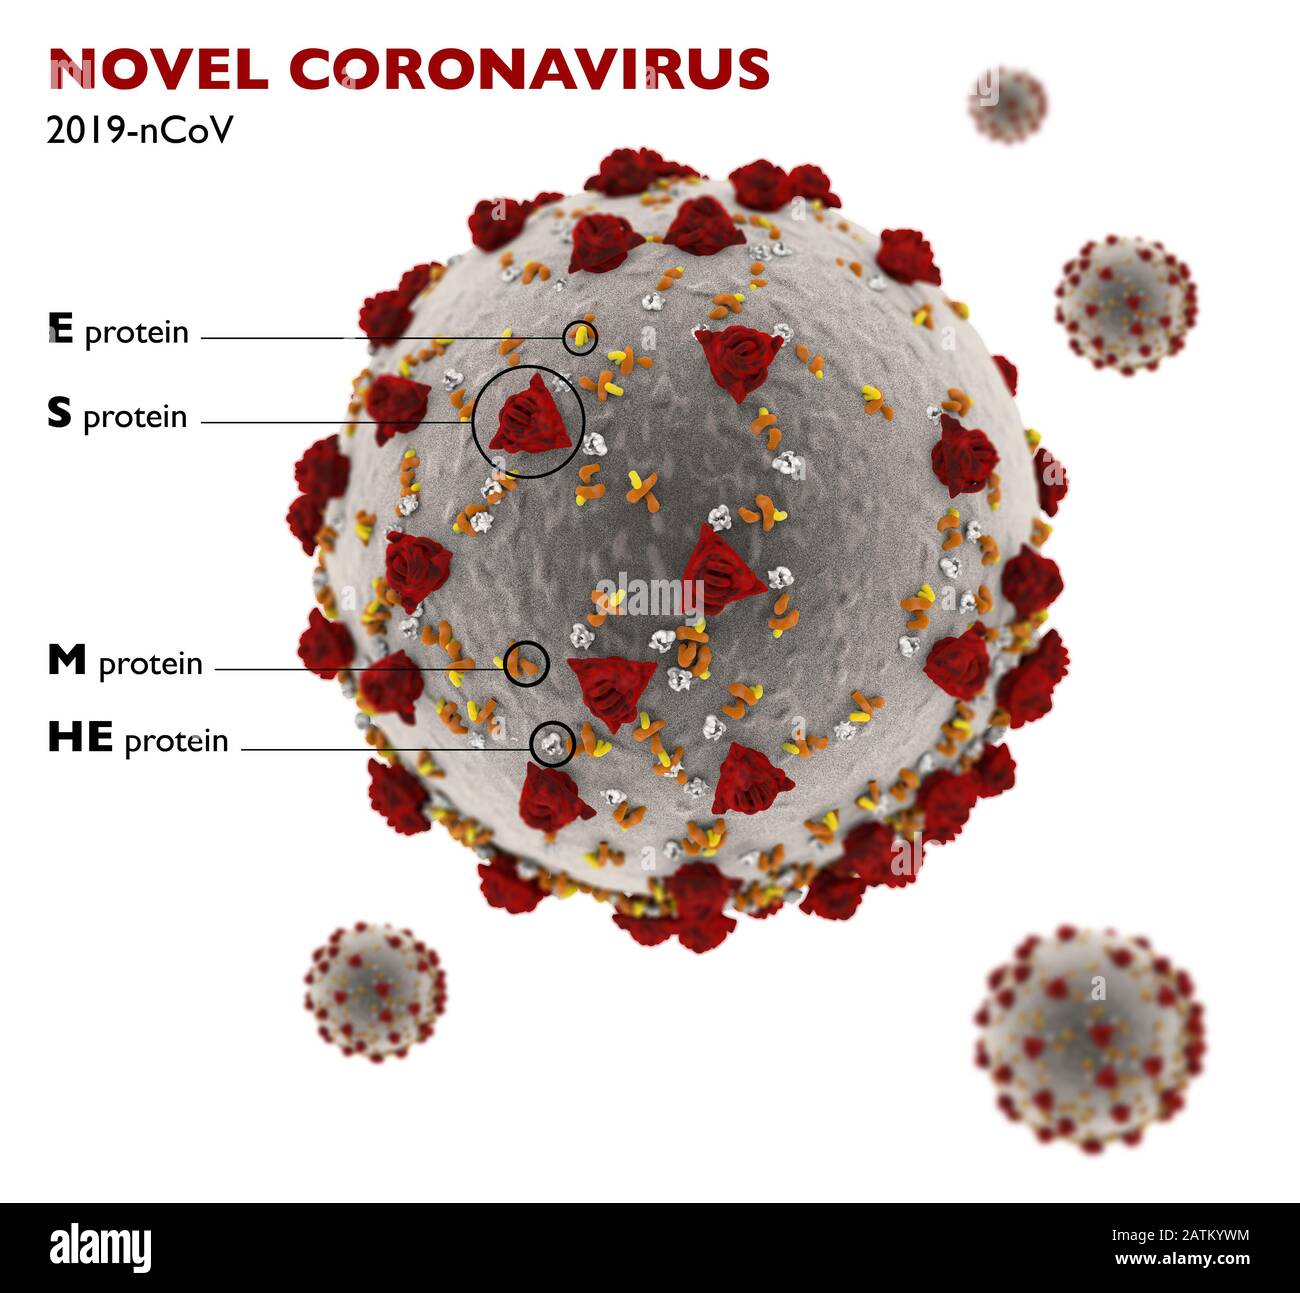 Vue microscopique du Coronavirus, un pathogène qui attaque les voies respiratoires. Contagion. Analyse et test, expérimentation. 2019-nCoV. Sras. Banque D'Images